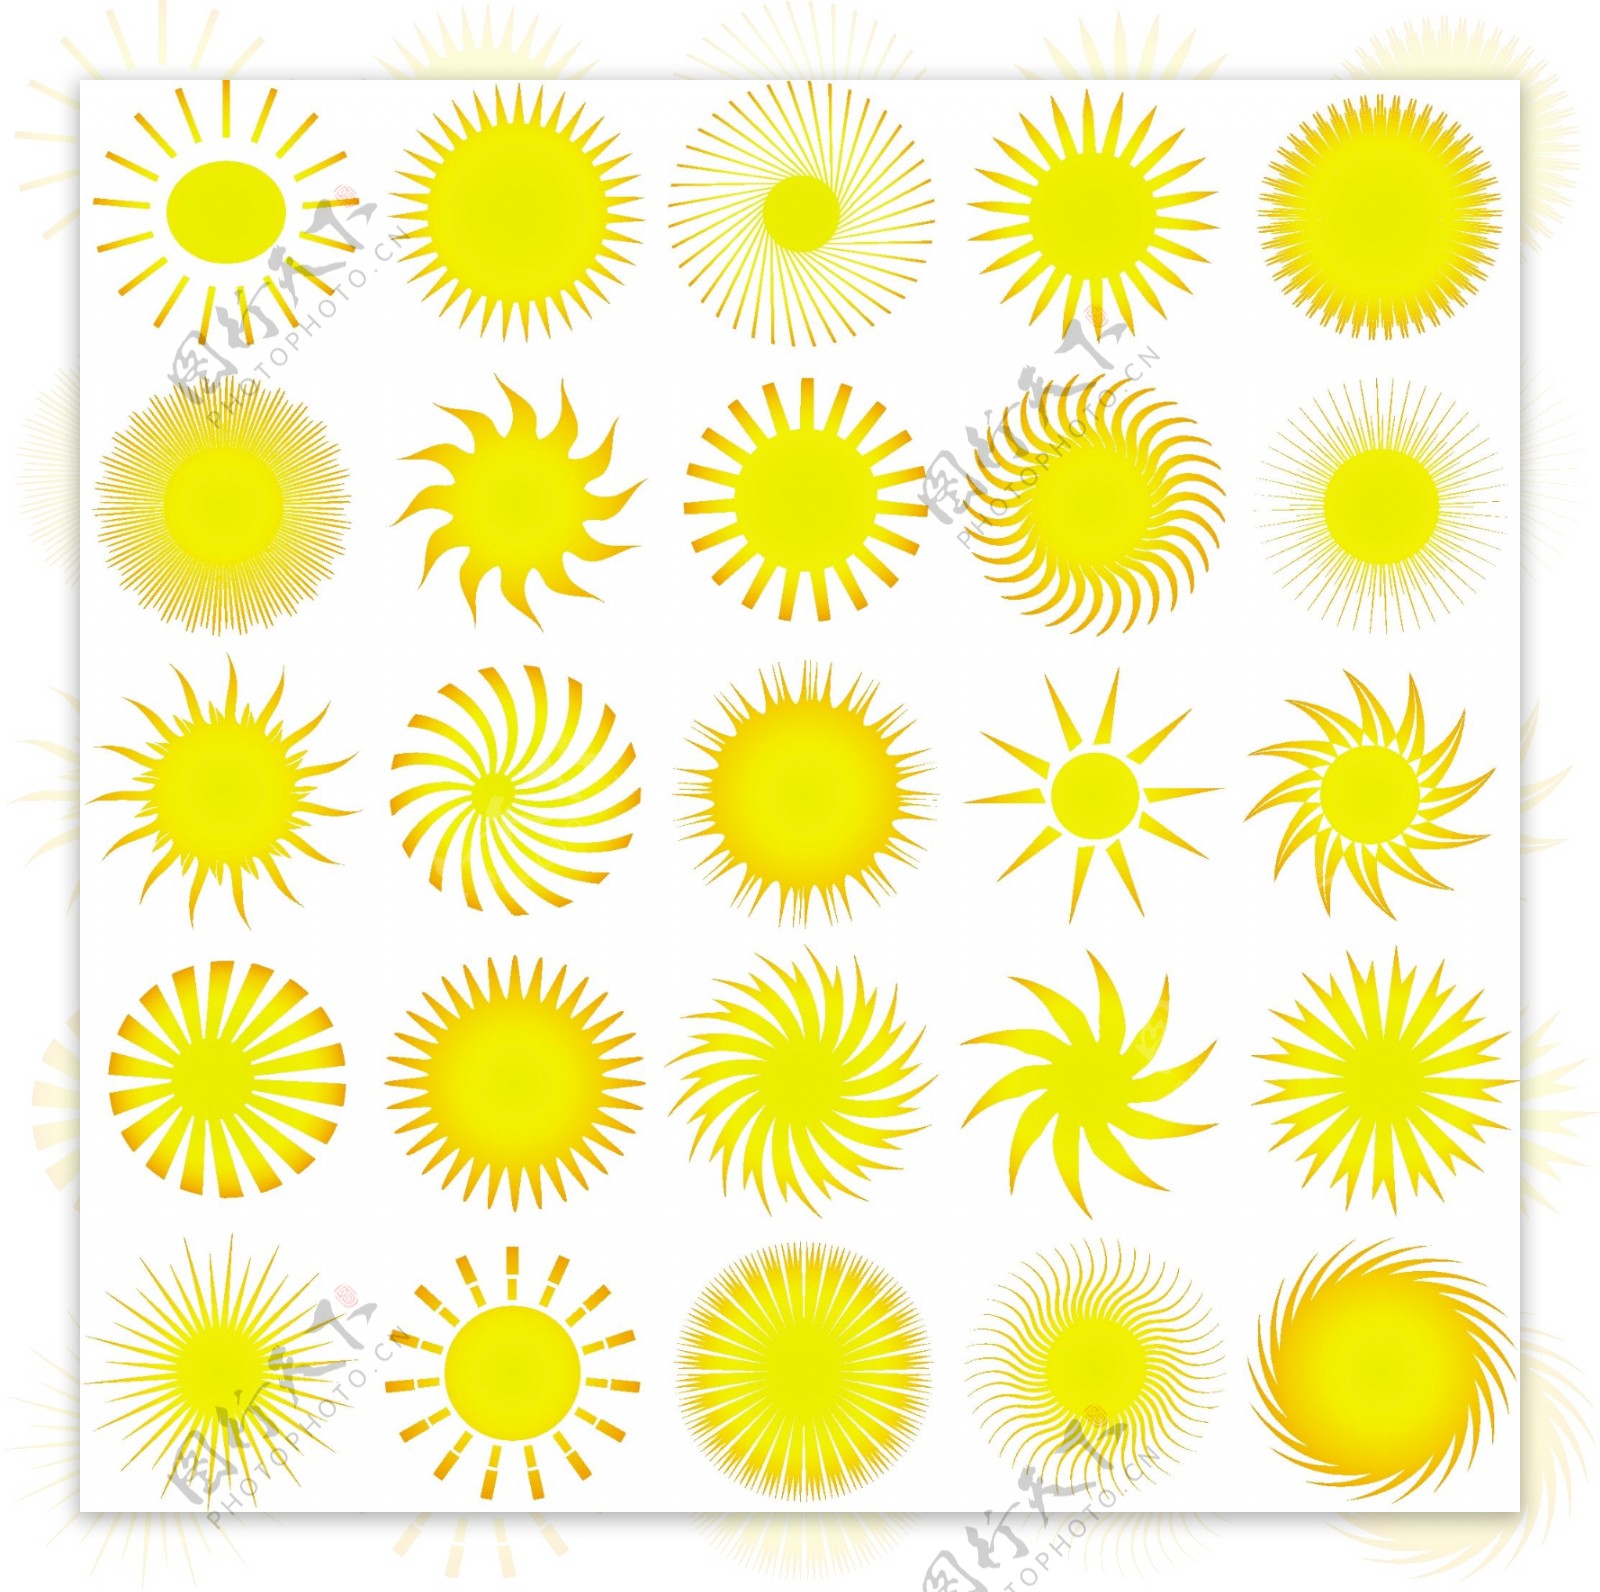 各种金黄色太阳图标